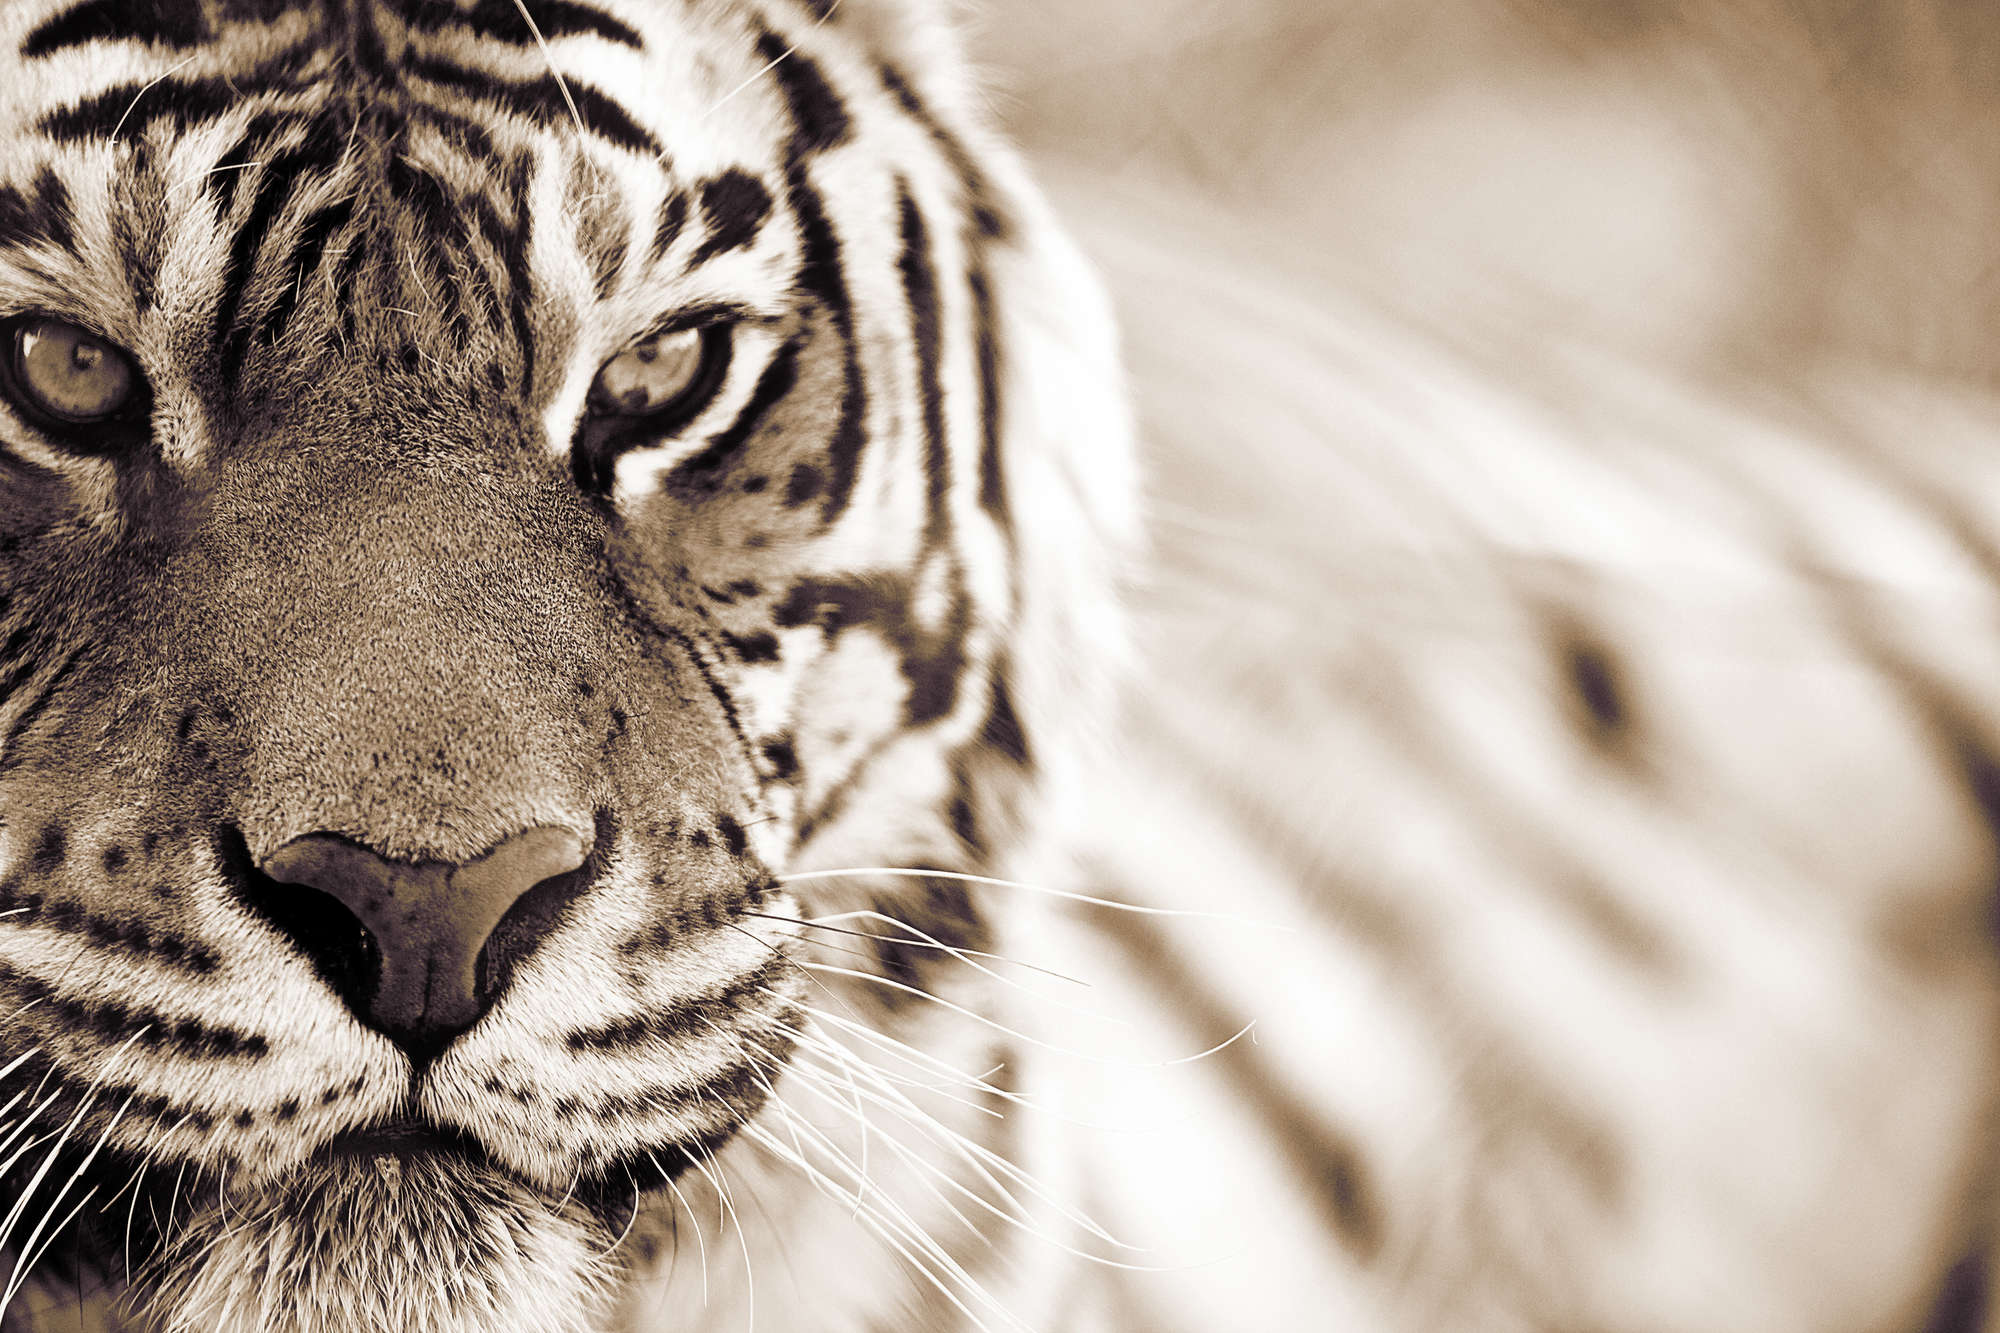             Tiger Fototapete Nahaufnahme im Freien auf Perlmutt Glattvlies
        